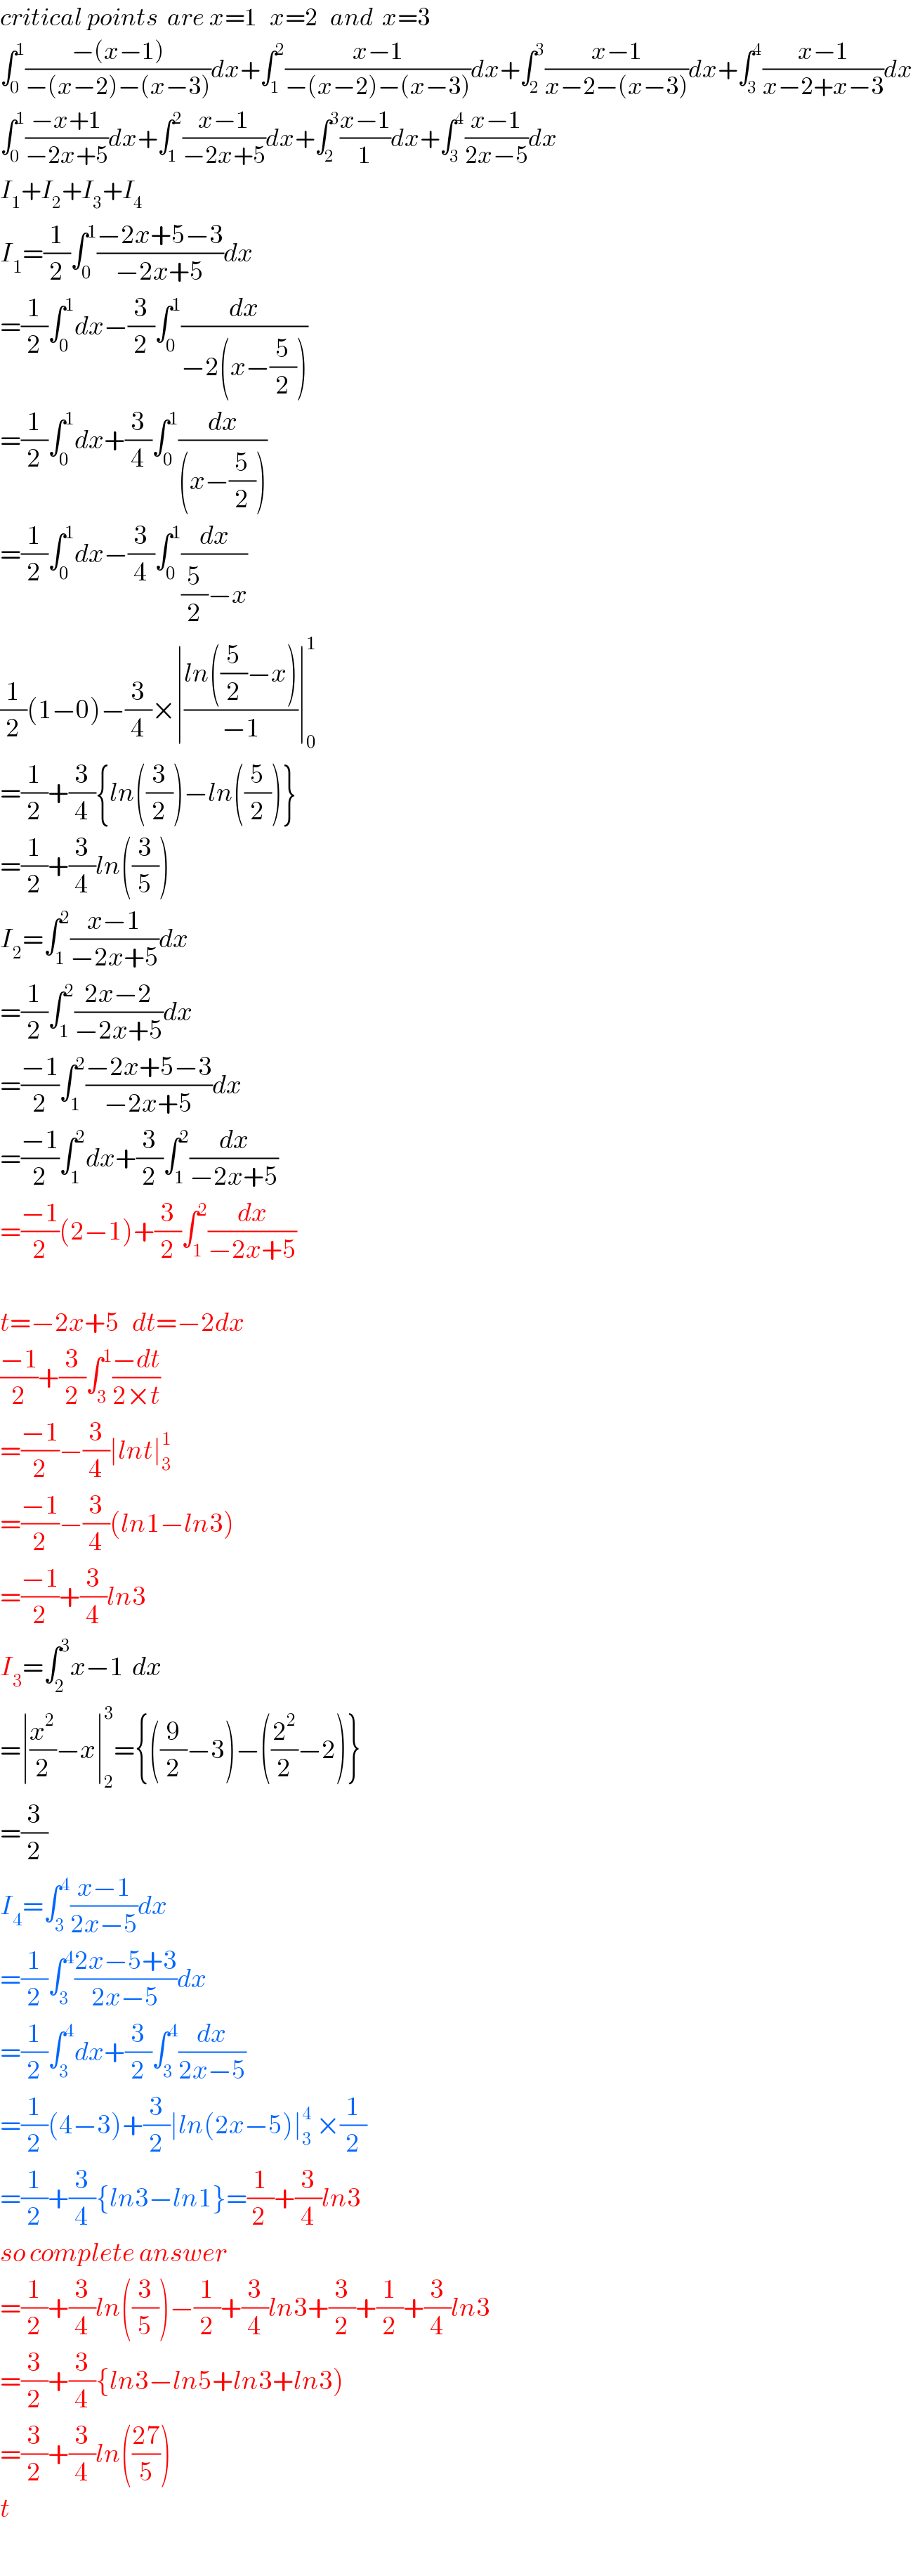 critical points  are x=1   x=2   and  x=3  ∫_0 ^1 ((−(x−1))/(−(x−2)−(x−3)))dx+∫_1 ^2 ((x−1)/(−(x−2)−(x−3)))dx+∫_2 ^3 ((x−1)/(x−2−(x−3)))dx+∫_3 ^4 ((x−1)/(x−2+x−3))dx  ∫_0 ^1 ((−x+1)/(−2x+5))dx+∫_1 ^2 ((x−1)/(−2x+5))dx+∫_2 ^3 ((x−1)/1)dx+∫_3 ^4 ((x−1)/(2x−5))dx  I_1 +I_2 +I_3 +I_4   I_1 =(1/2)∫_0 ^1 ((−2x+5−3)/(−2x+5))dx  =(1/2)∫_0 ^1 dx−(3/2)∫_0 ^1 (dx/(−2(x−(5/2))))  =(1/2)∫_0 ^1 dx+(3/4)∫_0 ^1 (dx/((x−(5/2))))  =(1/2)∫_0 ^1 dx−(3/4)∫_0 ^1 (dx/((5/2)−x))  (1/2)(1−0)−(3/4)×∣((ln((5/2)−x))/(−1))∣_0 ^1   =(1/2)+(3/4){ln((3/2))−ln((5/2))}  =(1/2)+(3/4)ln((3/5))  I_2 =∫_1 ^2 ((x−1)/(−2x+5))dx  =(1/2)∫_1 ^2 ((2x−2)/(−2x+5))dx  =((−1)/2)∫_1 ^2 ((−2x+5−3)/(−2x+5))dx  =((−1)/2)∫_1 ^2 dx+(3/2)∫_1 ^2 (dx/(−2x+5))  =((−1)/2)(2−1)+(3/2)∫_1 ^2 (dx/(−2x+5))    t=−2x+5   dt=−2dx  ((−1)/2)+(3/2)∫_3 ^1 ((−dt)/(2×t))  =((−1)/2)−(3/4)∣lnt∣_3 ^1   =((−1)/2)−(3/4)(ln1−ln3)  =((−1)/2)+(3/4)ln3  I_3 =∫_2 ^3 x−1  dx  =∣(x^2 /2)−x∣_2 ^3 ={((9/2)−3)−((2^2 /2)−2)}  =(3/2)  I_4 =∫_3 ^4 ((x−1)/(2x−5))dx  =(1/2)∫_3 ^4 ((2x−5+3)/(2x−5))dx  =(1/2)∫_3 ^4 dx+(3/2)∫_3 ^4 (dx/(2x−5))  =(1/2)(4−3)+(3/2)∣ln(2x−5)∣_3 ^4  ×(1/2)  =(1/2)+(3/4){ln3−ln1}=(1/(2 ))+(3/4)ln3  so complete answer  =(1/2)+(3/4)ln((3/5))−(1/2)+(3/4)ln3+(3/2)+(1/2)+(3/4)ln3  =(3/2)+(3/4){ln3−ln5+ln3+ln3)  =(3/2)+(3/4)ln(((27)/5))  t  